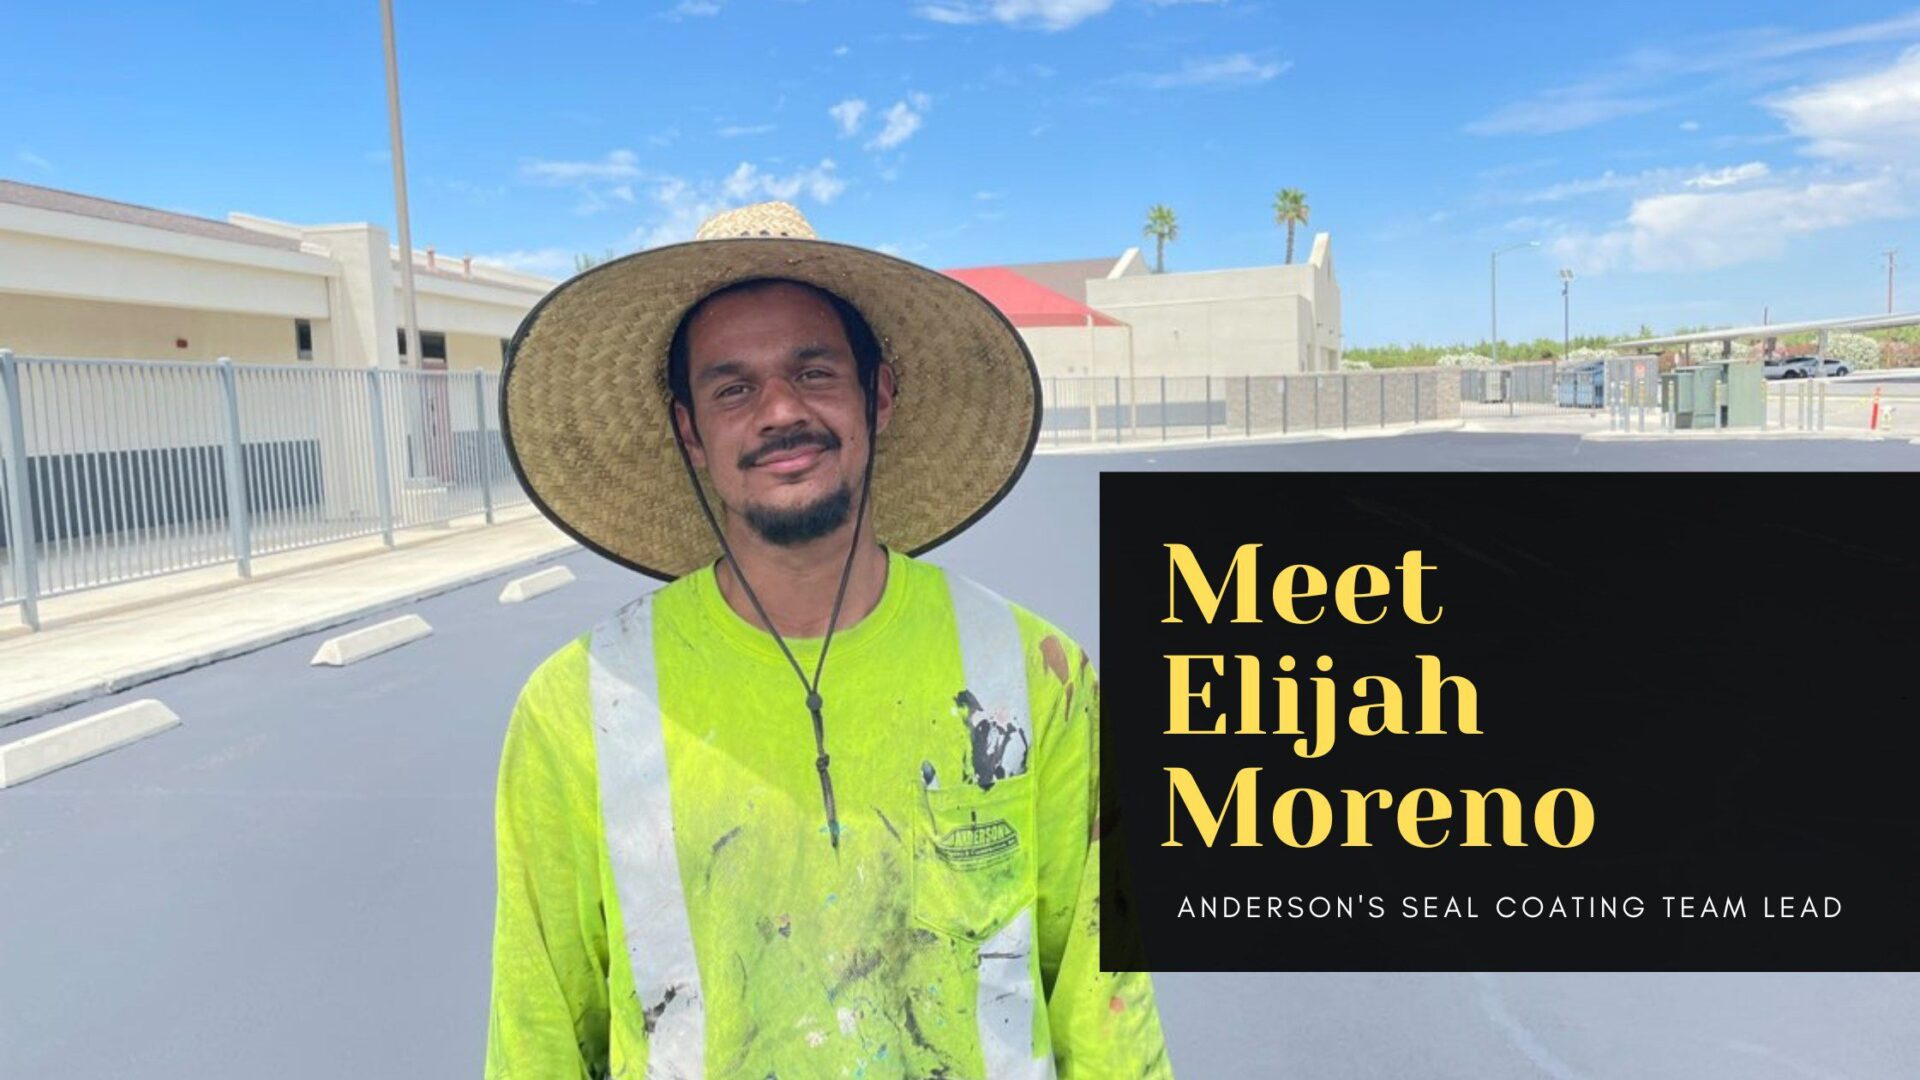 Meet Elijah Moreno